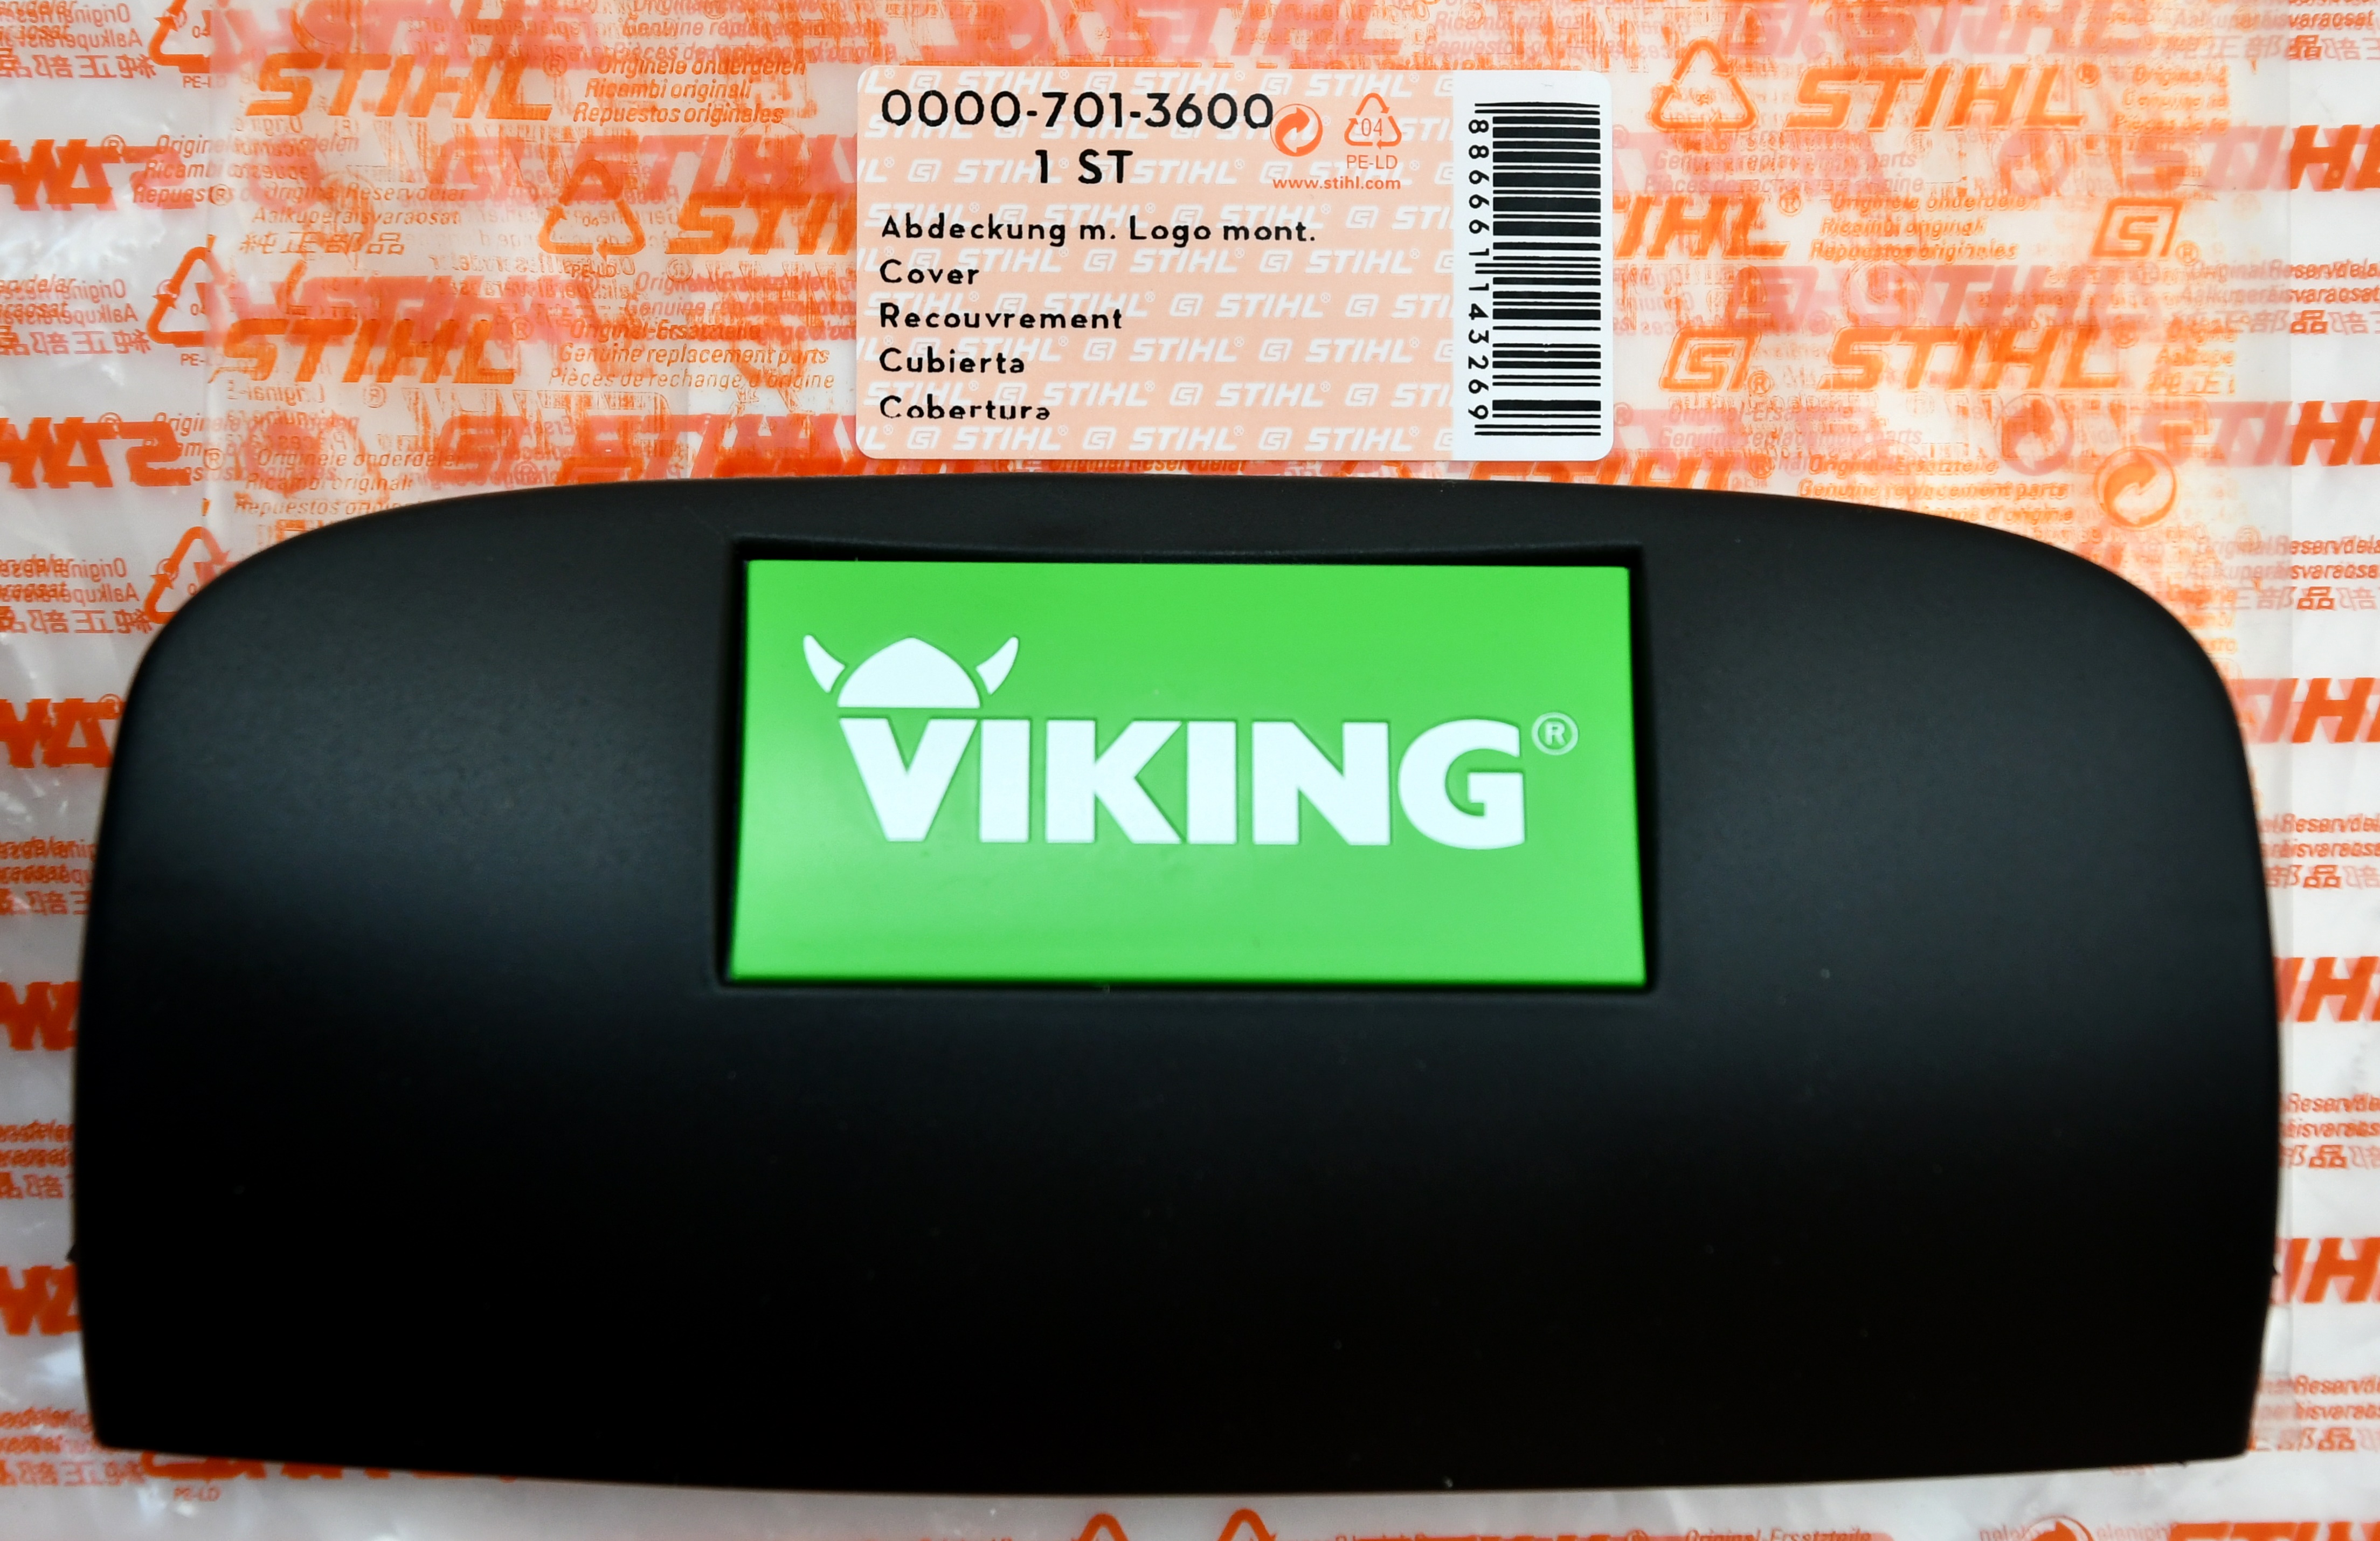 Stihl Viking  00007013600 Abdeckung mit Logo Typenschild für MB 545 MB545-  0000 701 3600 